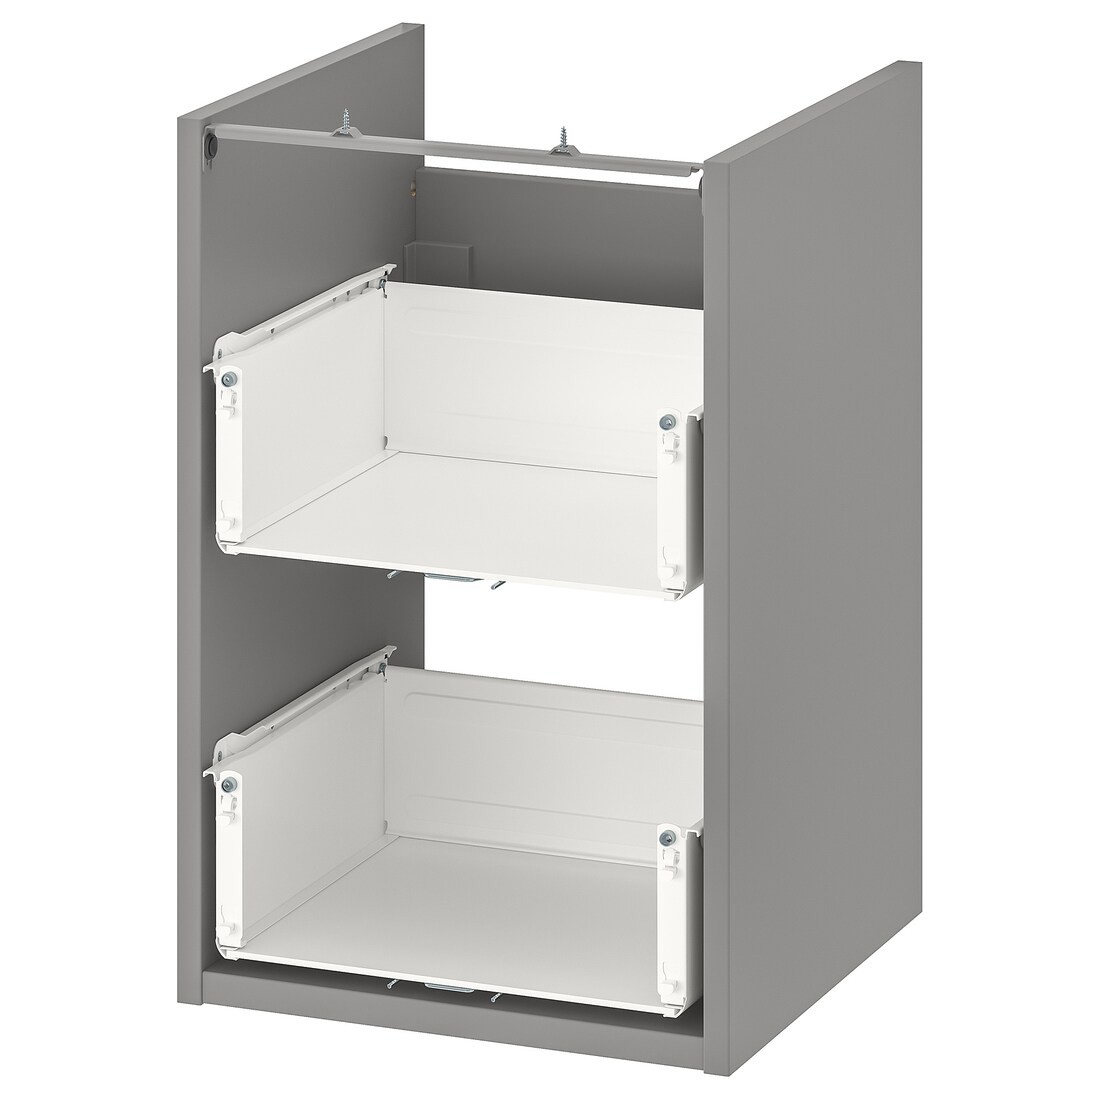 IKEA ENHET ЭНХЕТ Напольный шкаф под раковину с 2 ящиками, серый, 40x40x60 см 00440508 004.405.08